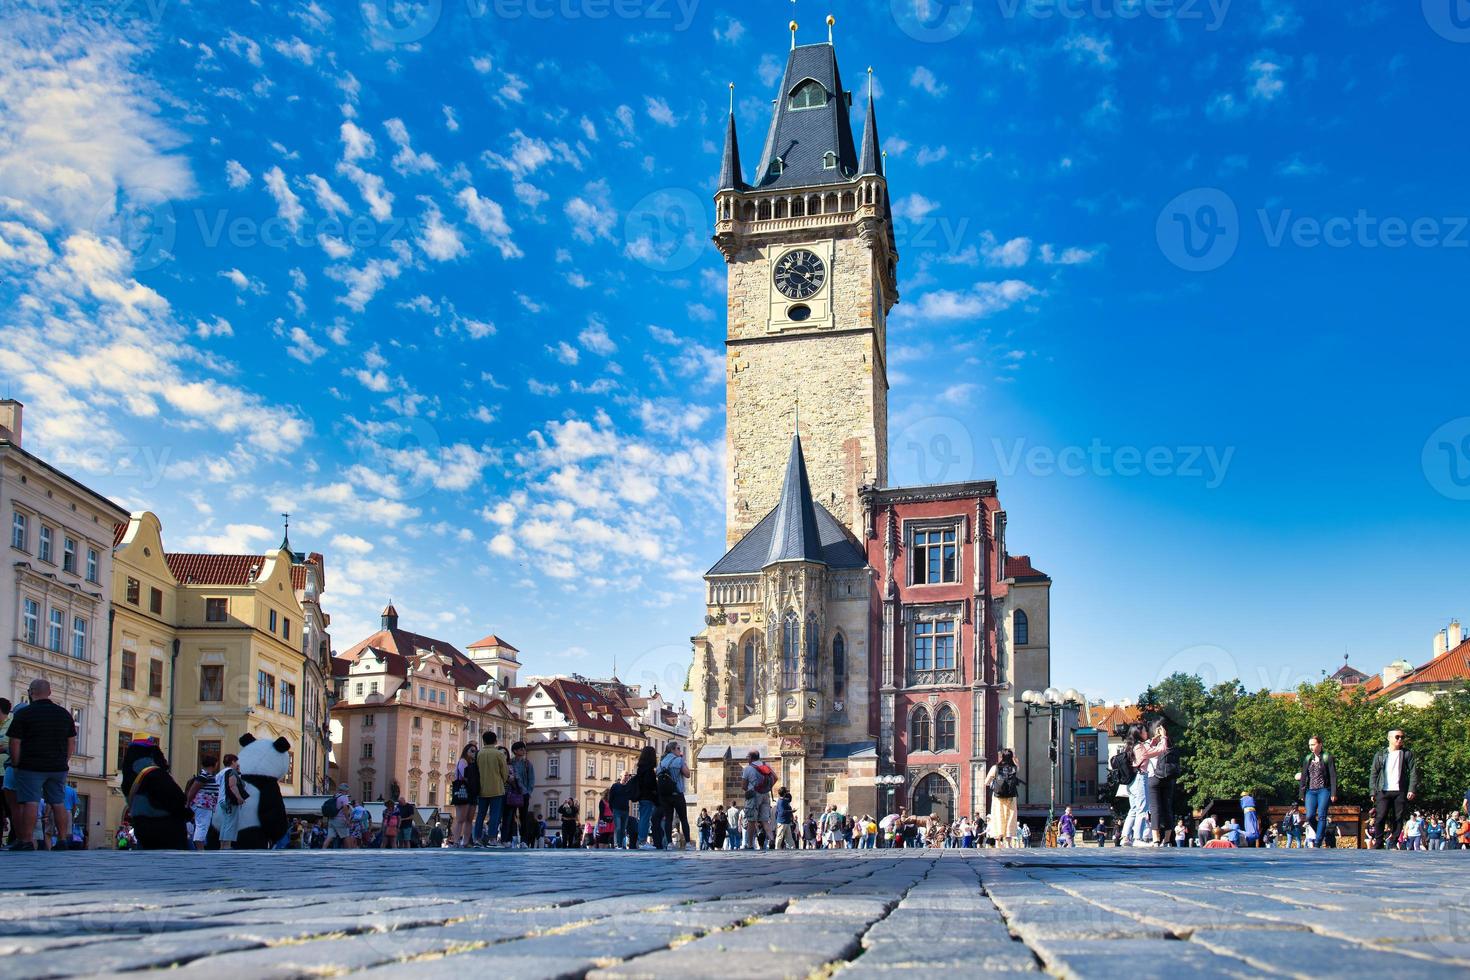 praça da cidade velha em praga com a torre do relógio astronômico foto